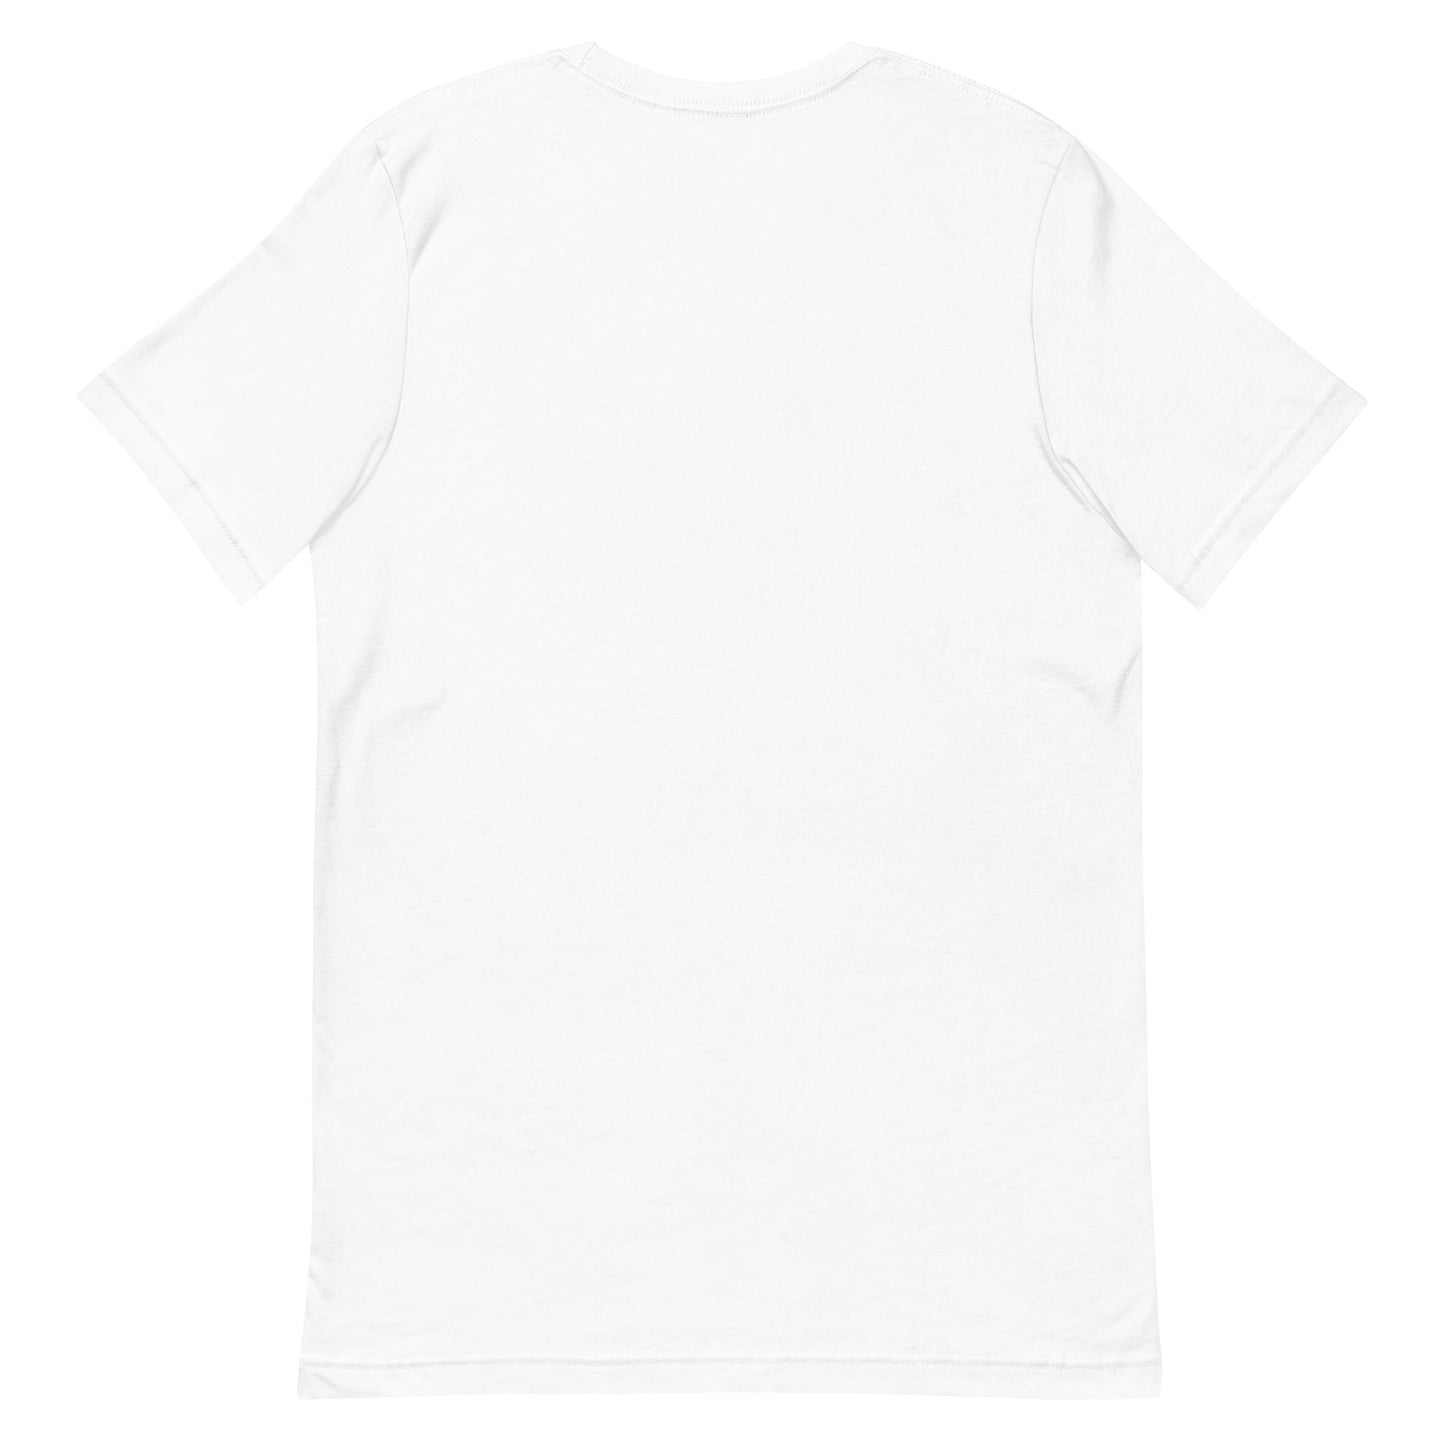 Unisex t-shirt "47 CHAUSU NOBASHI" White